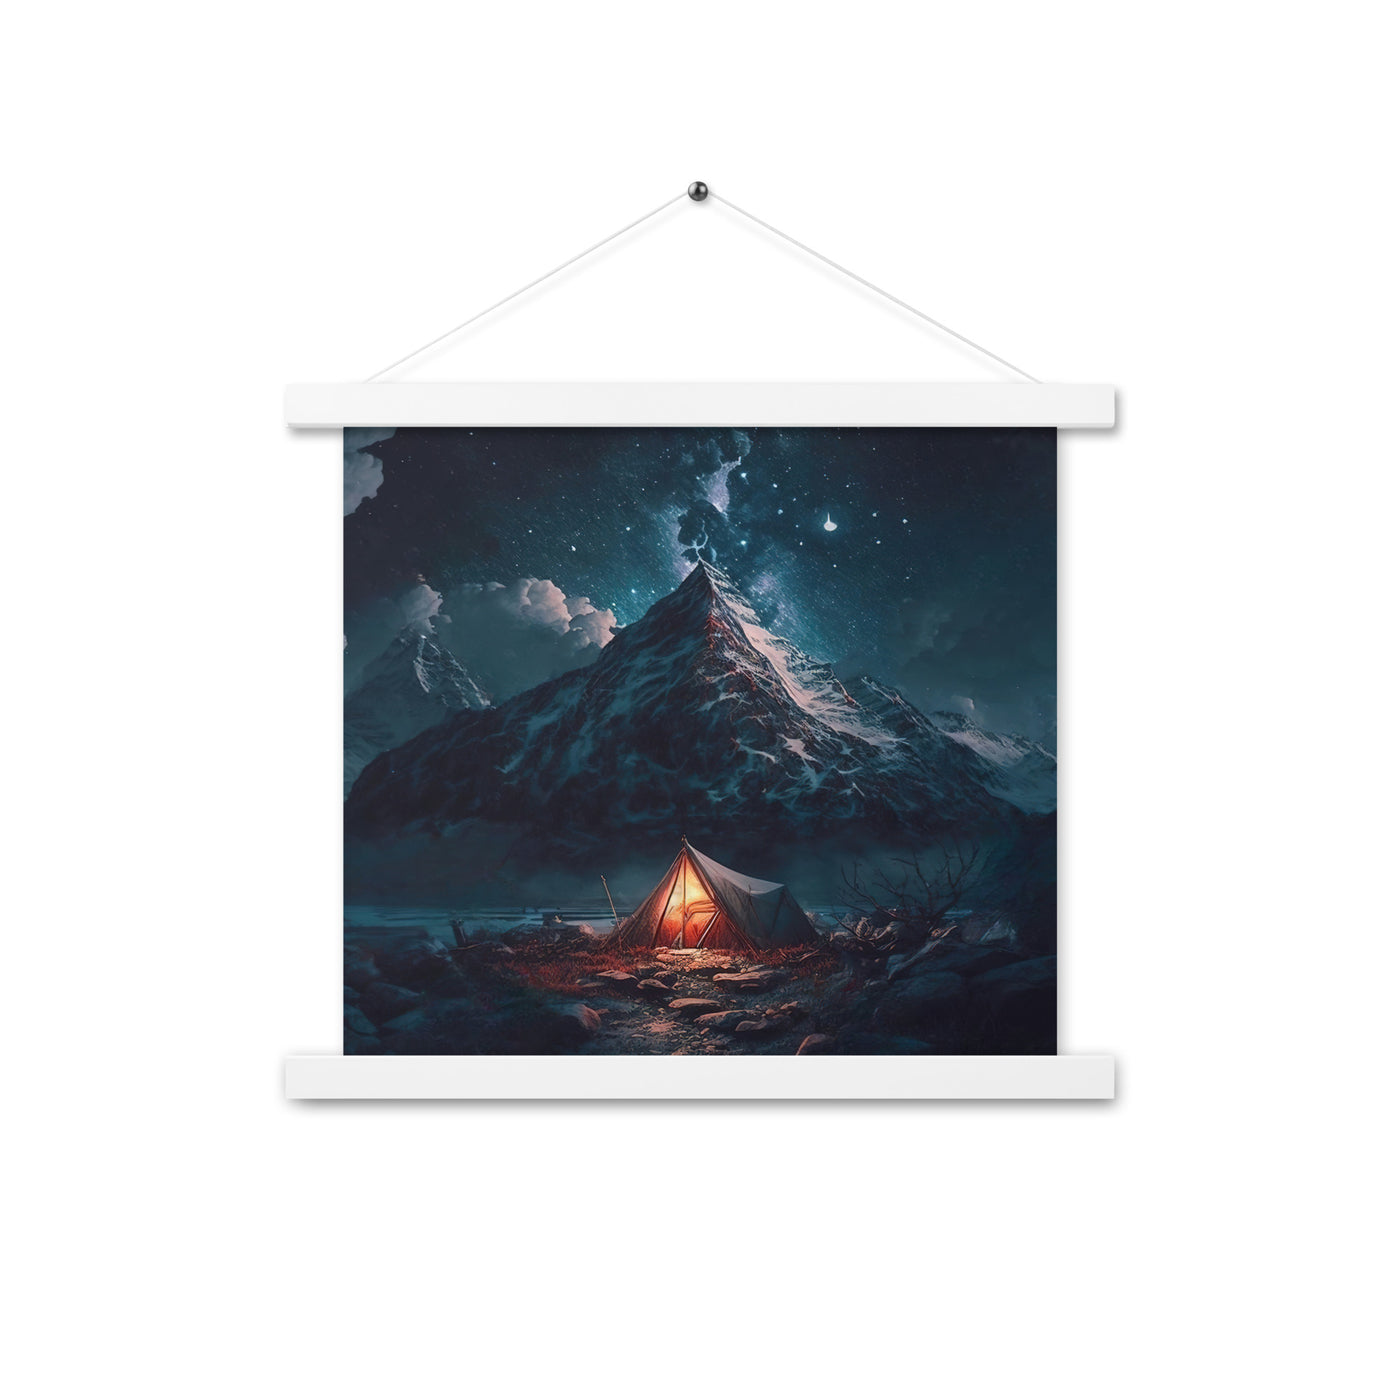 Zelt und Berg in der Nacht - Sterne am Himmel - Landschaftsmalerei - Premium Poster mit Aufhängung camping xxx 35.6 x 35.6 cm